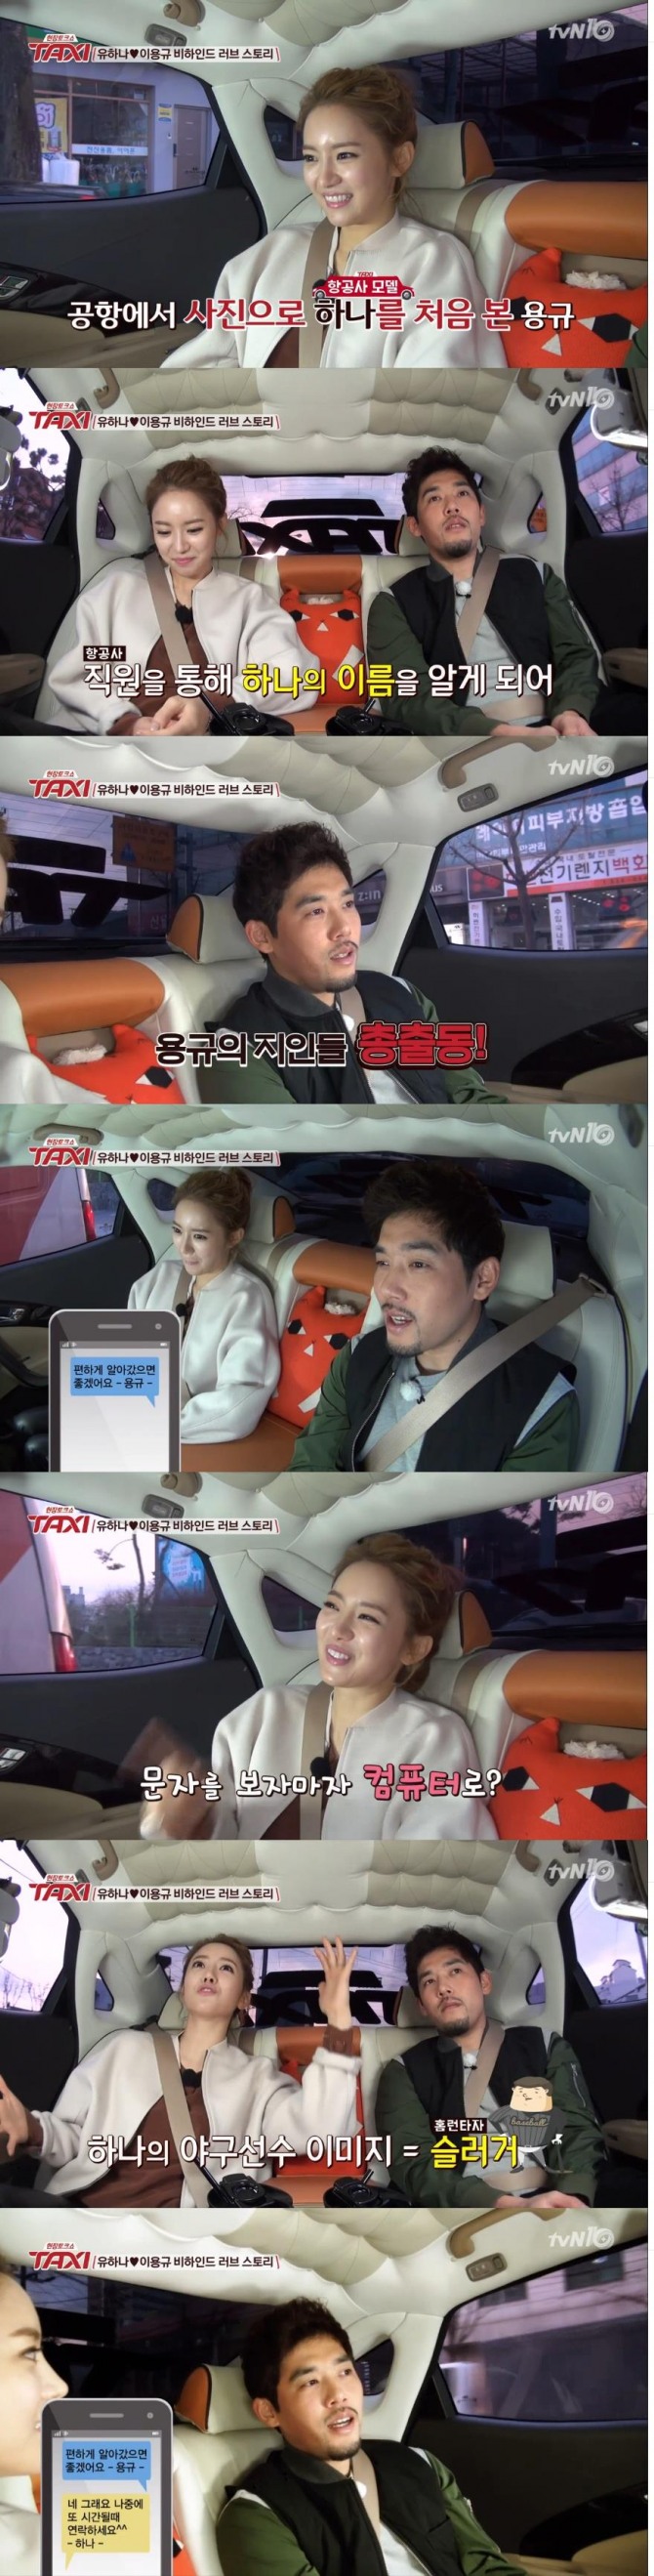 19일 방송된 tvN '현장토크쇼 택시'에 야구선수 이용규·유하나 부부가 출연해 처음 만남부터 근황까지 소개하는 시간을 가졌다./사진=tvN 방송 캡처